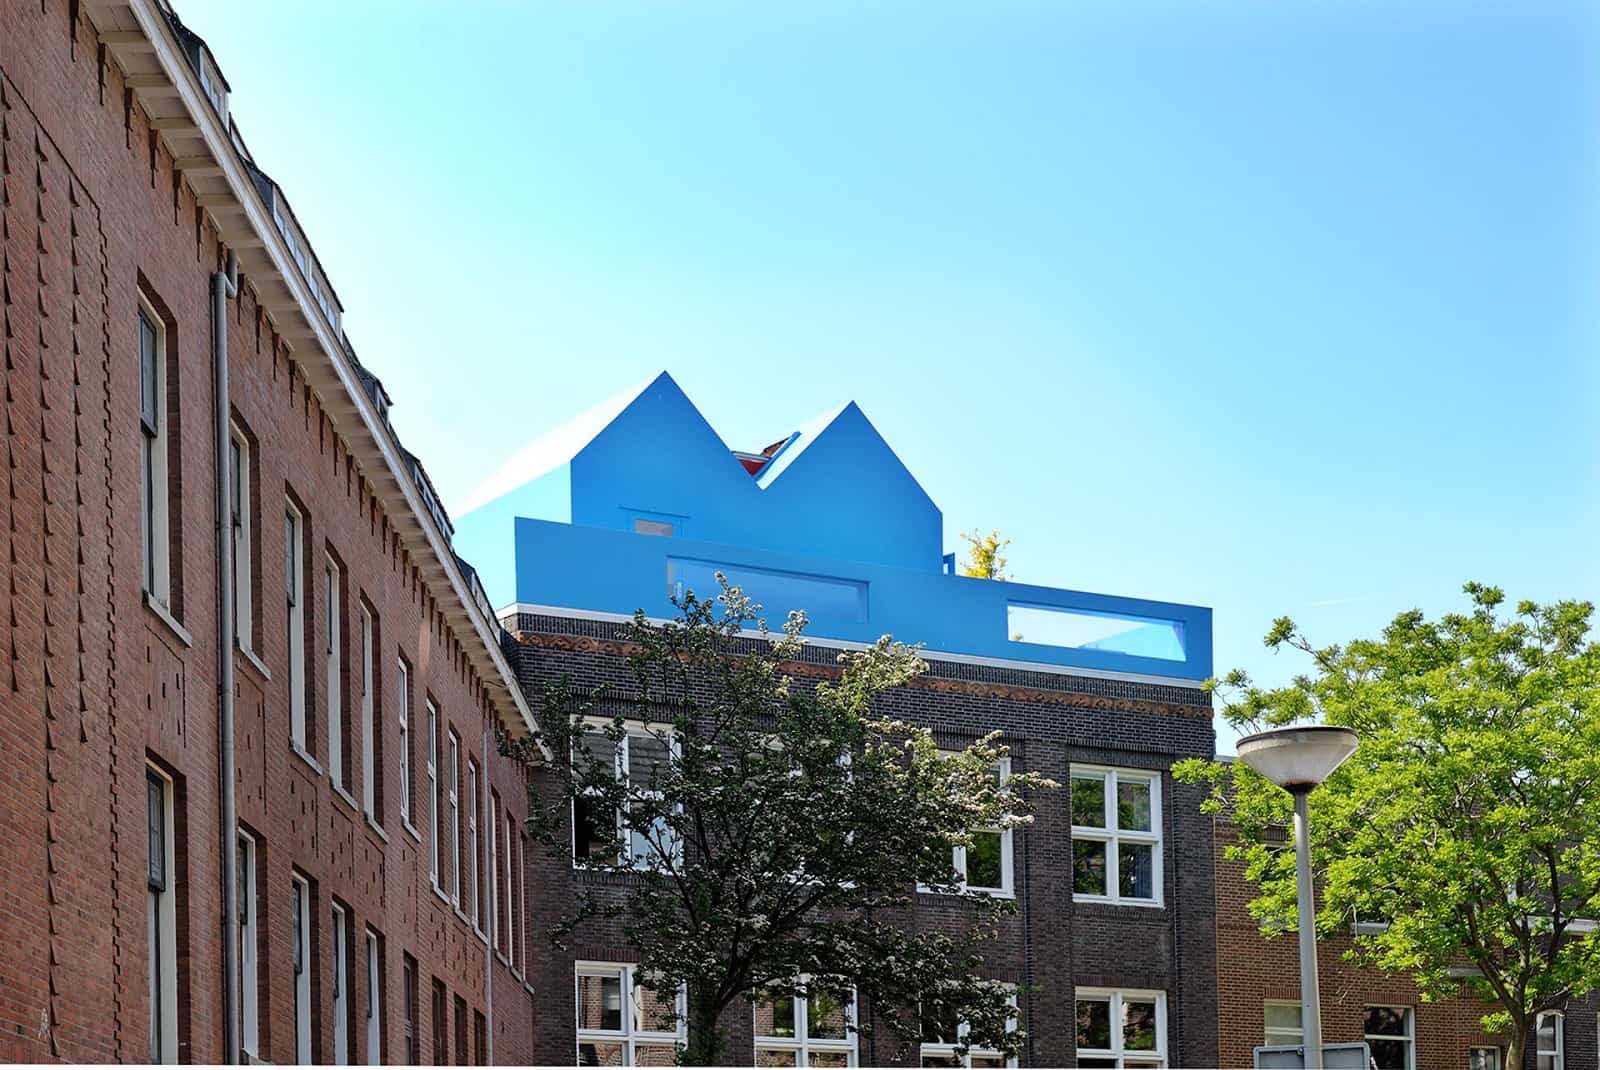 馬斯把頂樓加蓋帶到鹿特丹，蓋了屋頂的藍房子「Didden Village」。圖片來源：MVRDV提供